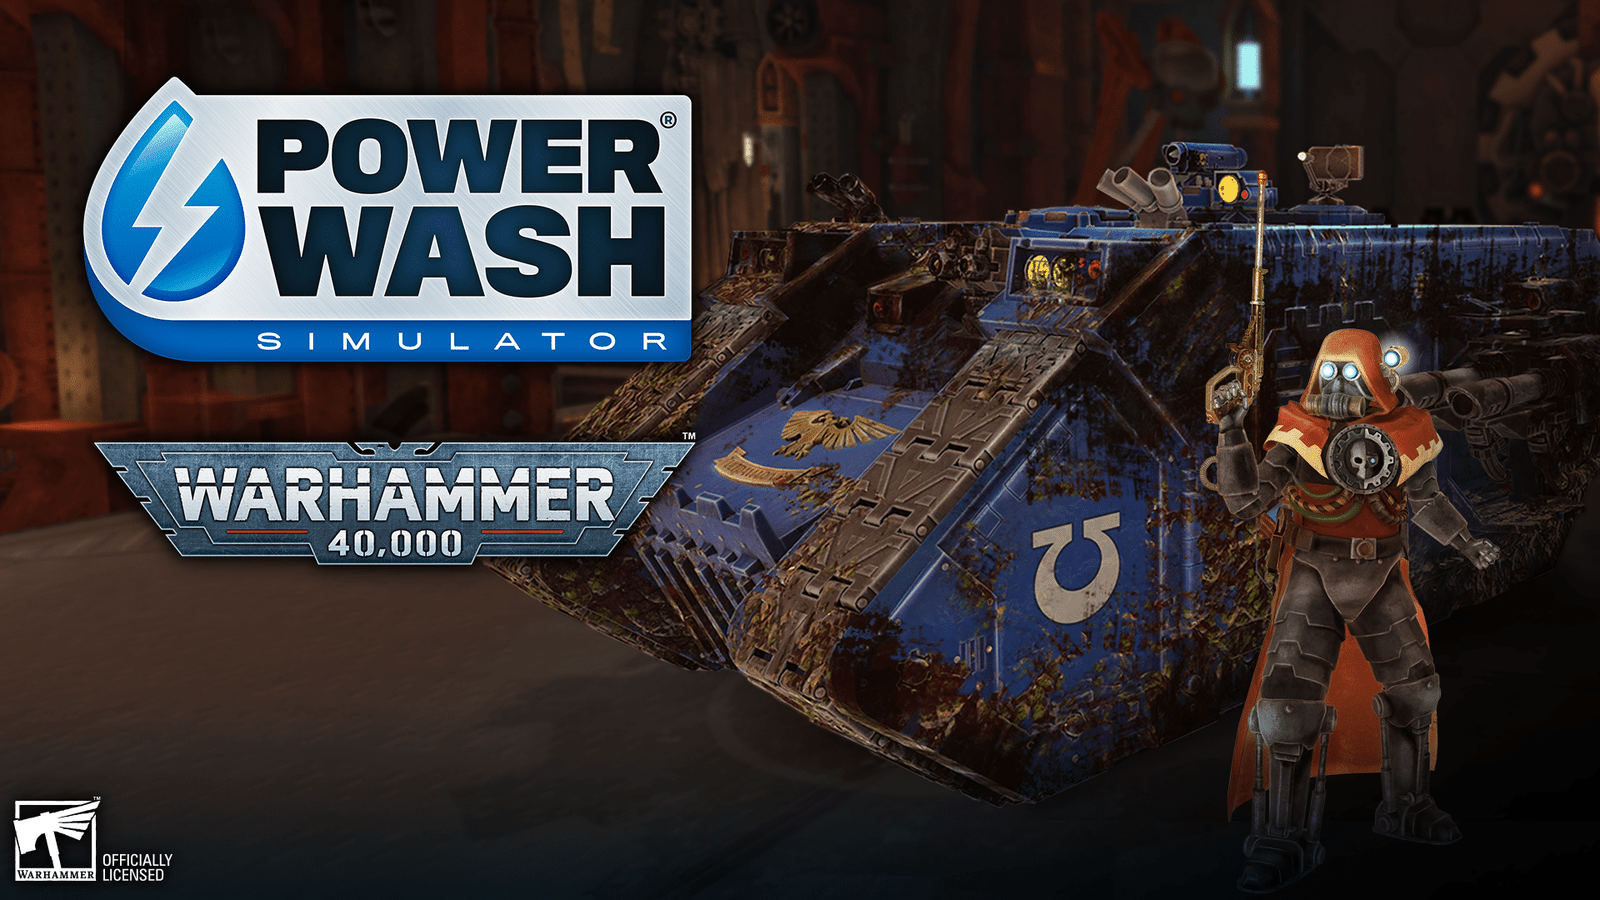 POWERWASH SIMULATOR et Warhammer 40,000 unissent leurs Forces pour une sortie aujourd’hui d’un nouveau pack